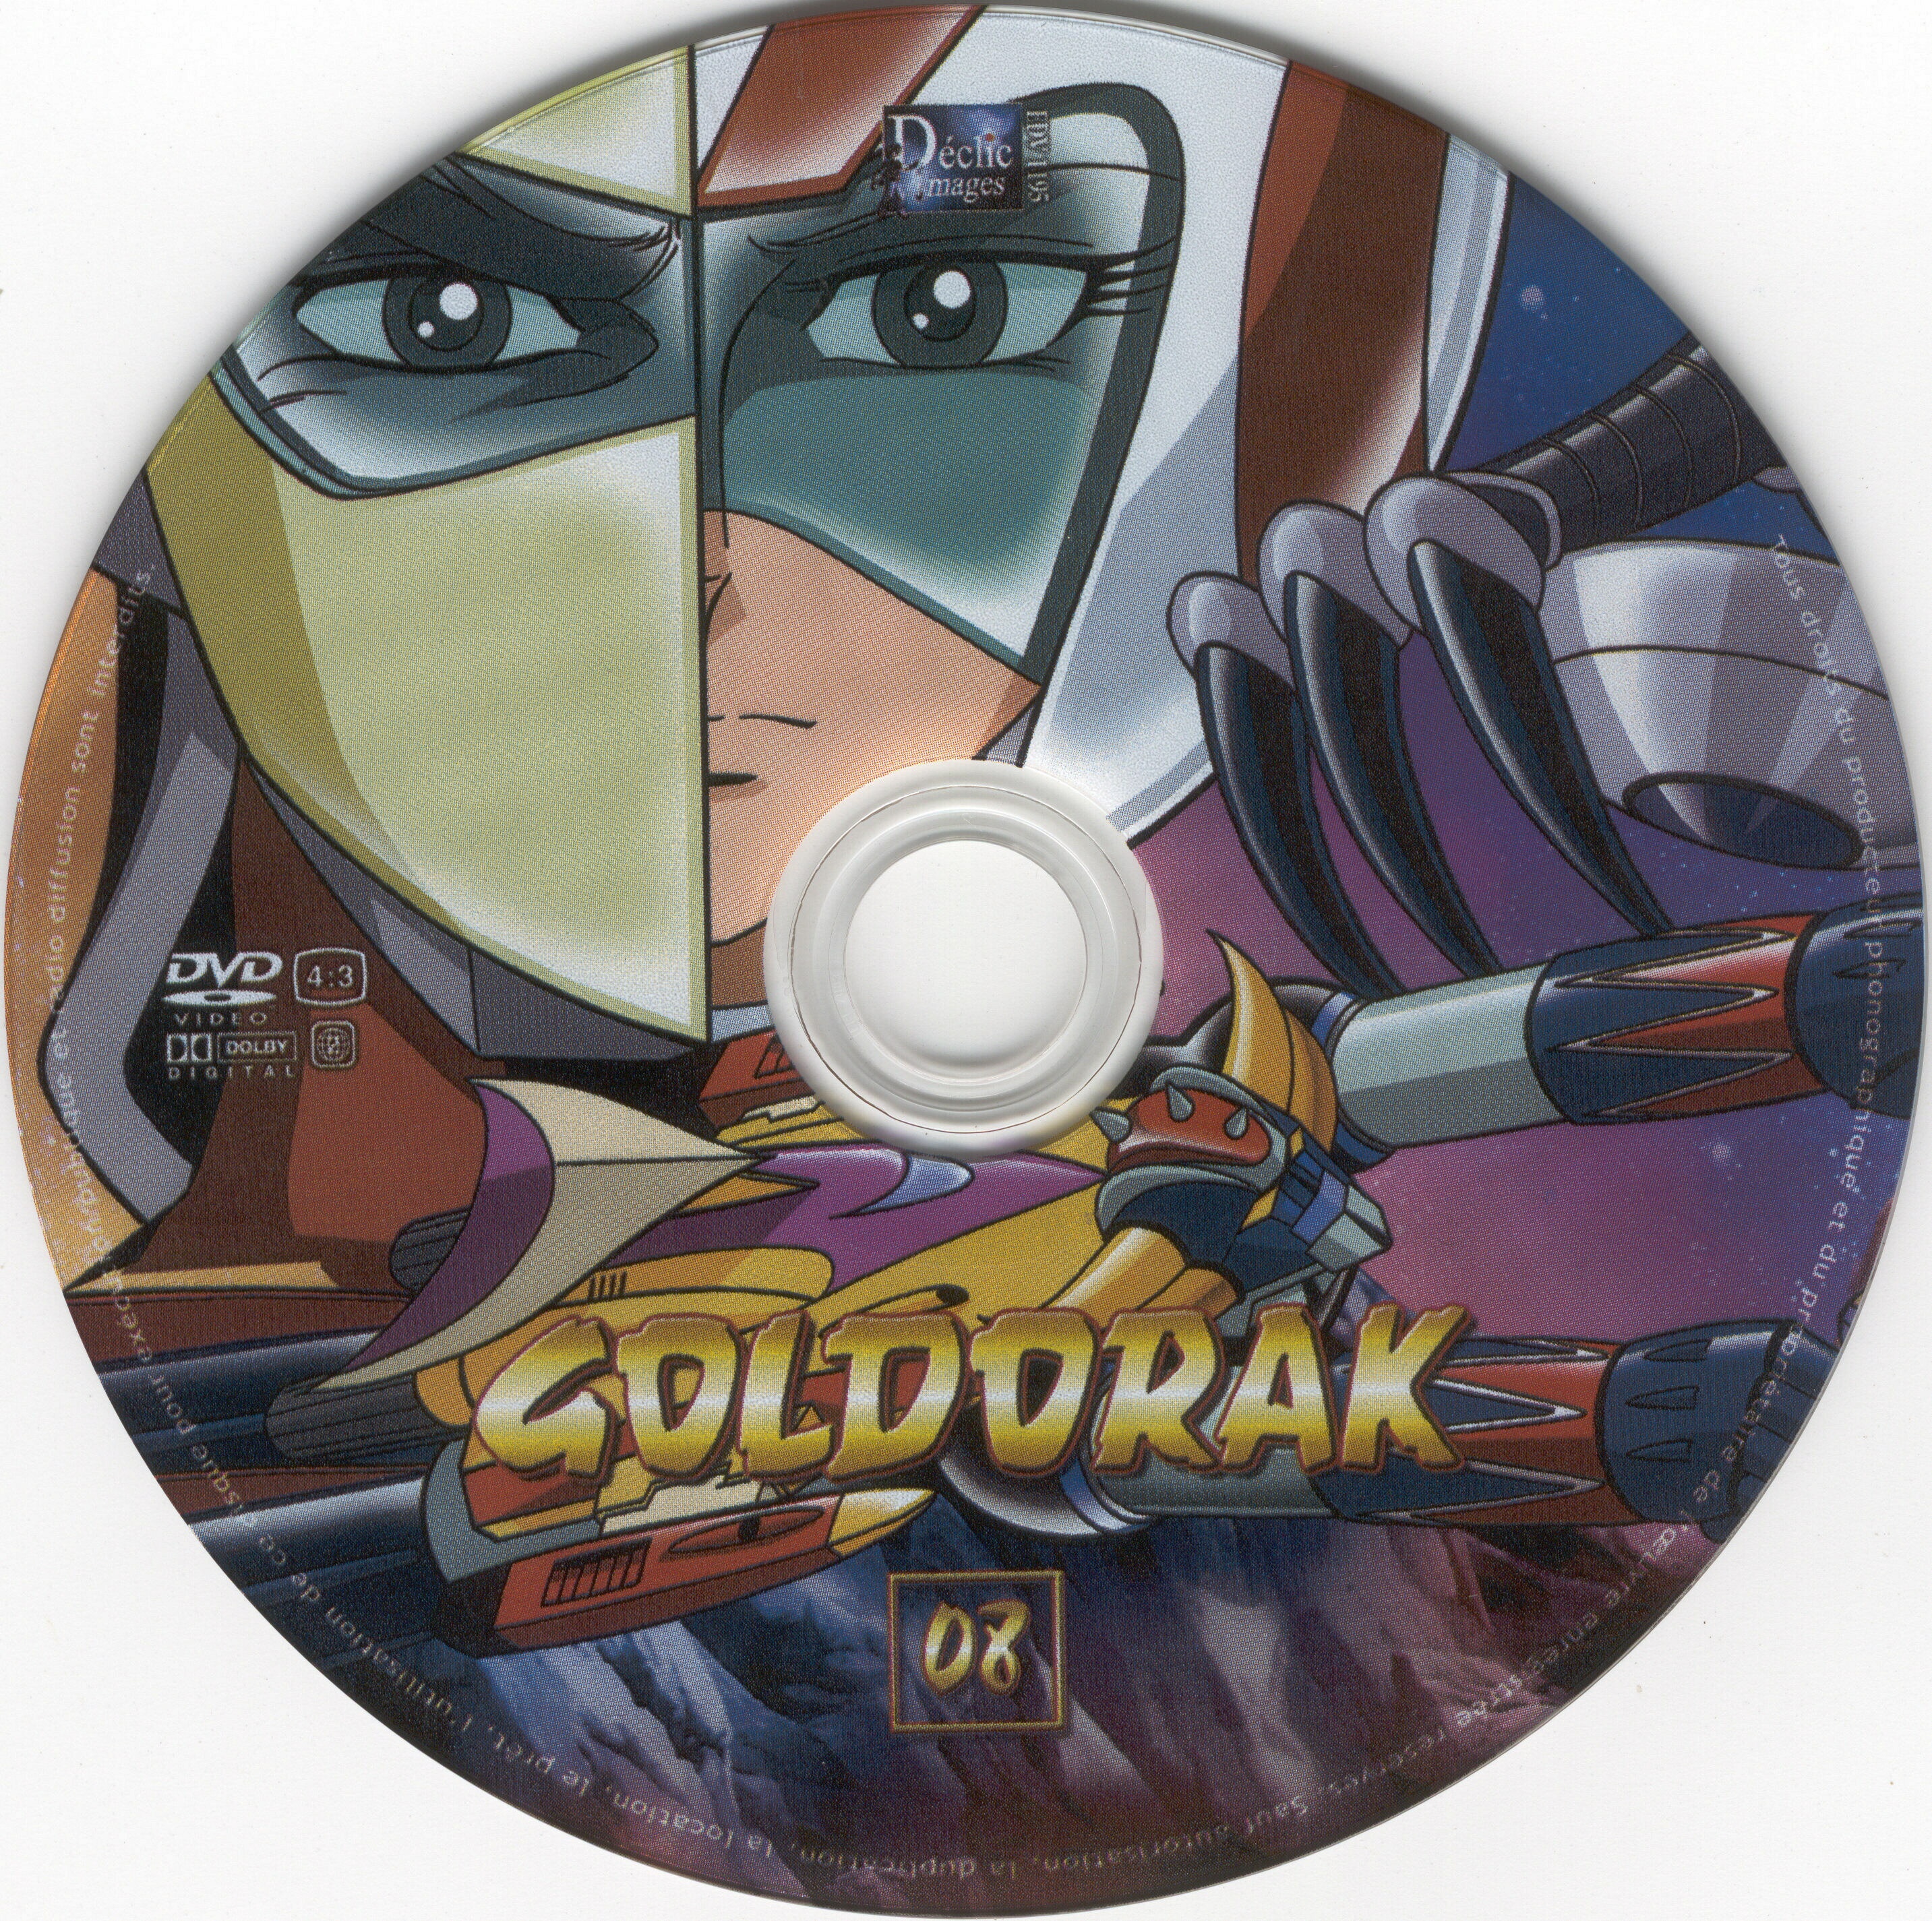 Goldorak vol 08